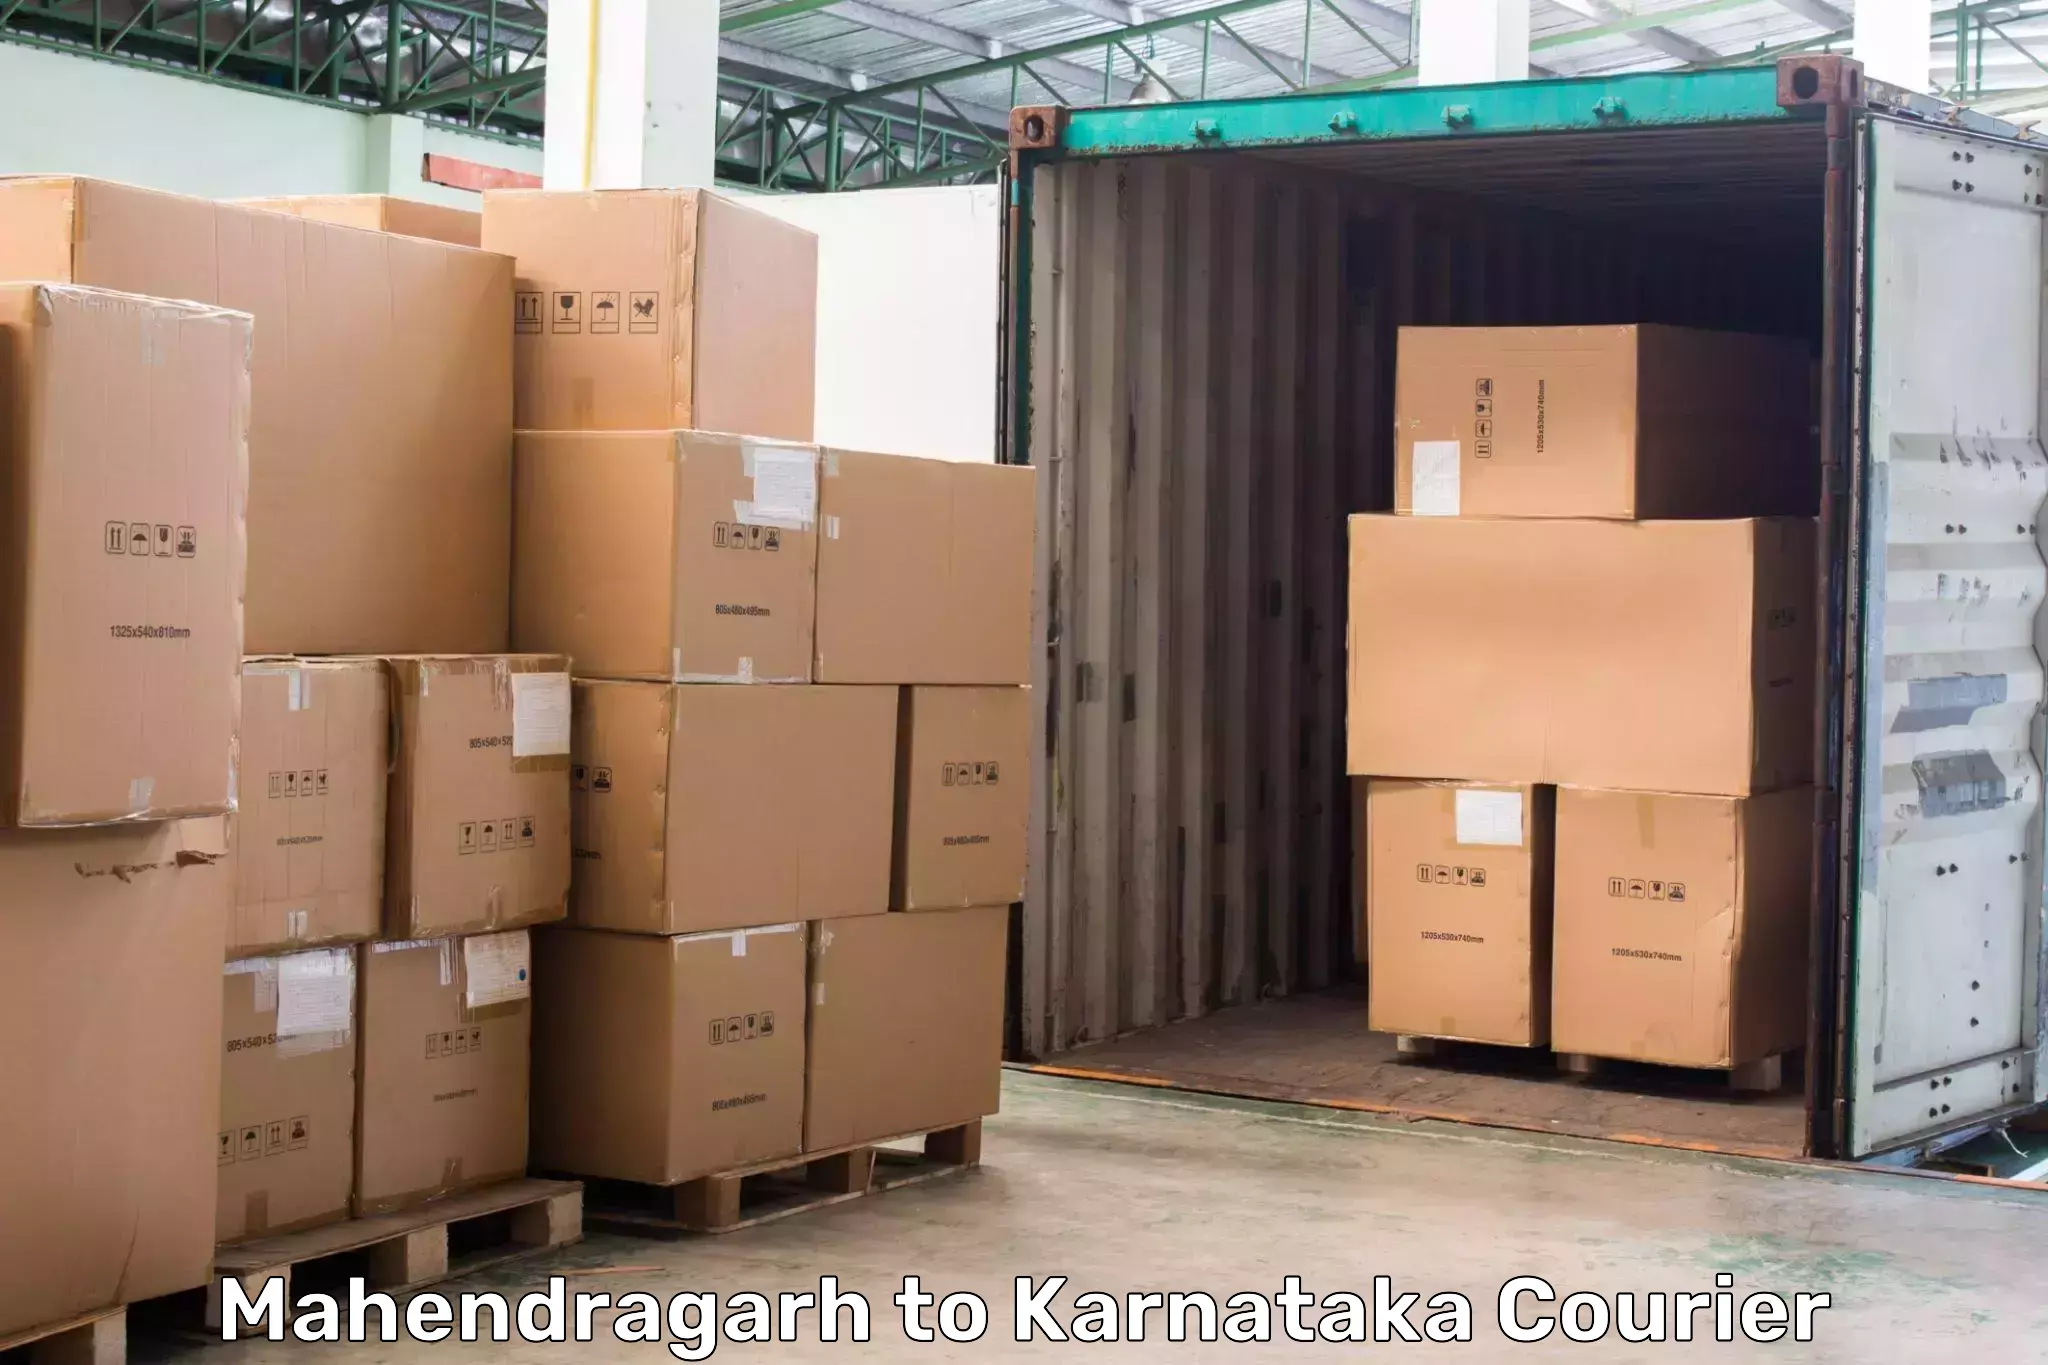 High-capacity parcel service Mahendragarh to Aland Kalaburagi